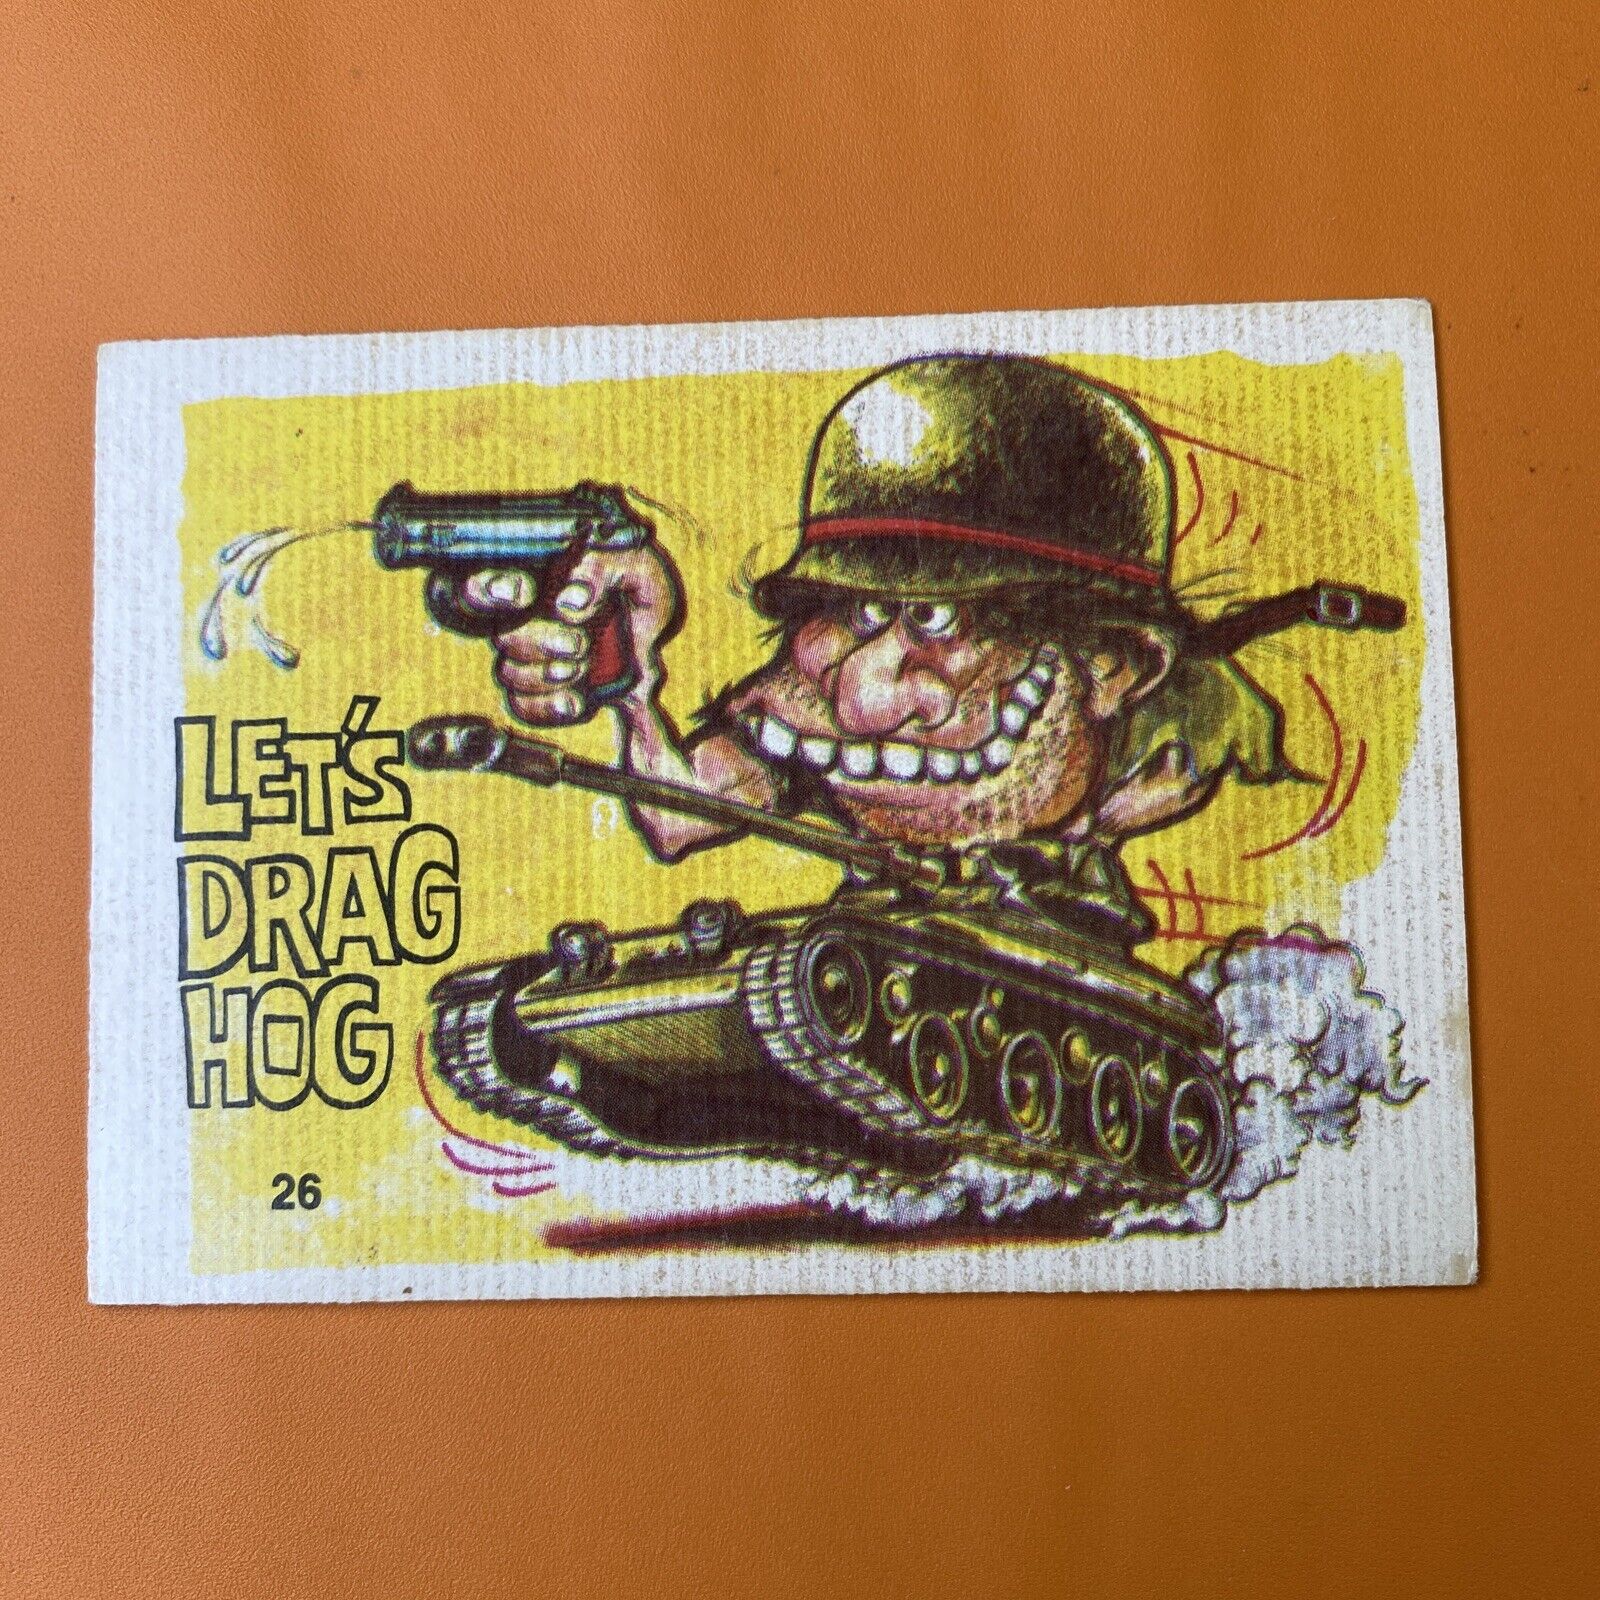 ODD RODS Donruss Sticker Card #26 Lets Drag Hog 1969-1973 Vintage Hot Rod RARE